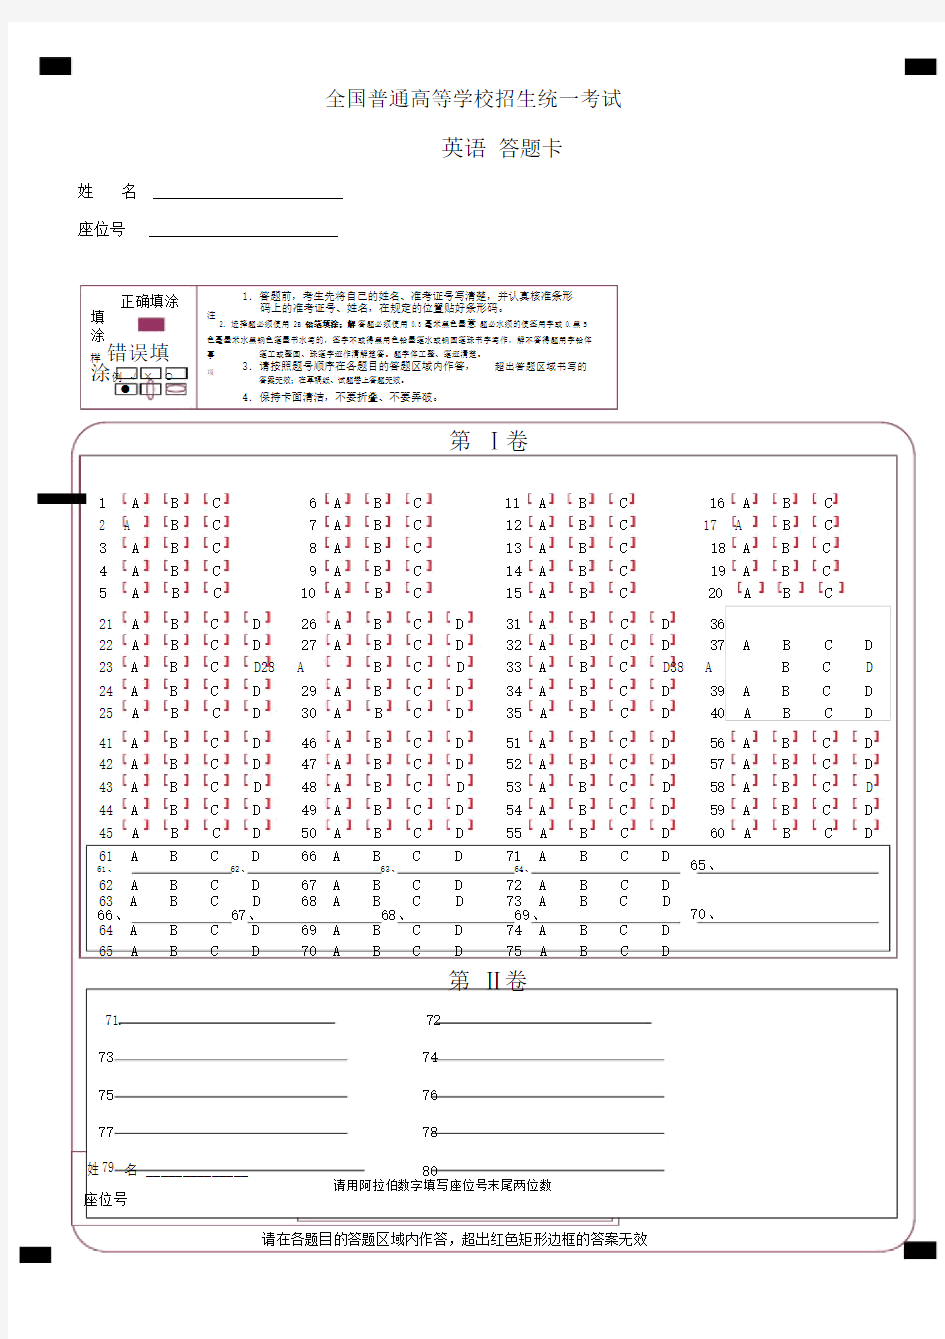 (完整word版)高考英语答题卡模板.docx